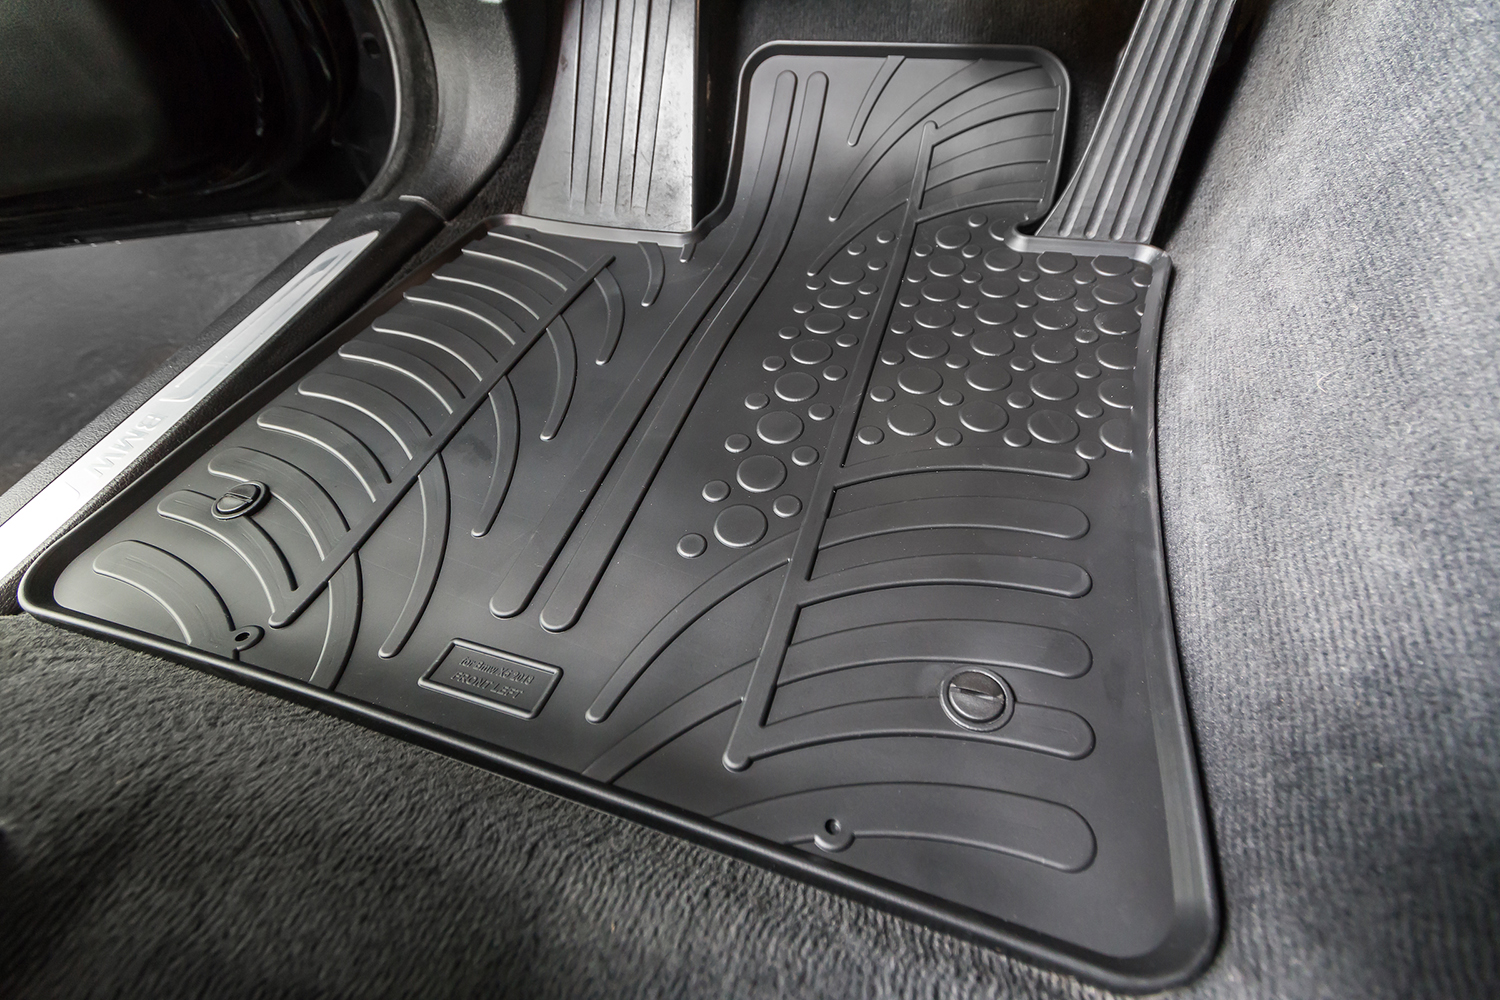 AZUGA Auto-Fußmatten Hohe Gummi-Fußmatten passend für Seat Ateca ab 2016,  für Cupra,Seat Ateca SUV